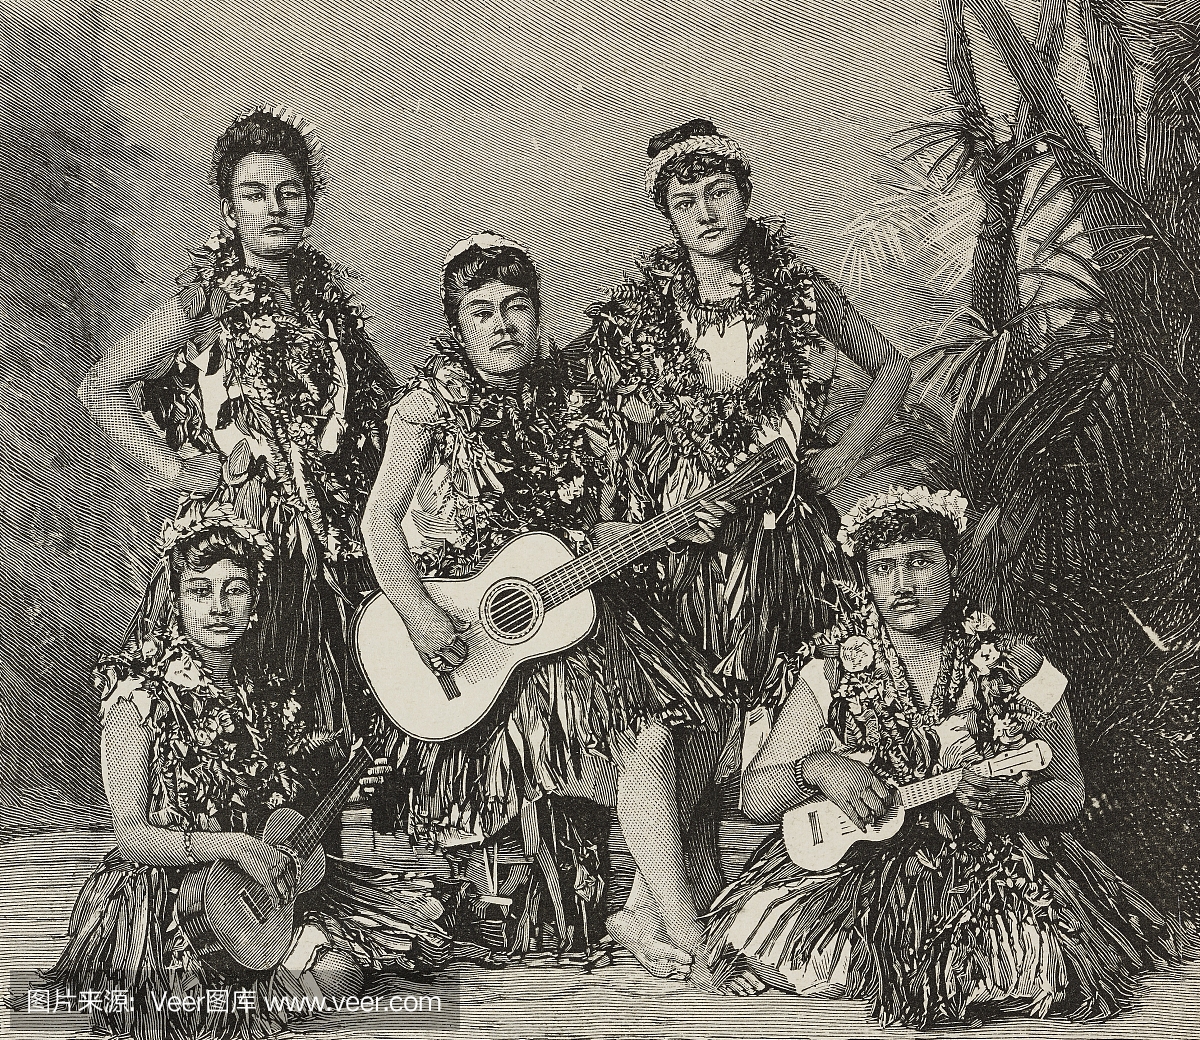 呼啦舞者,夏威夷,插图来自插图,编号2608,1893